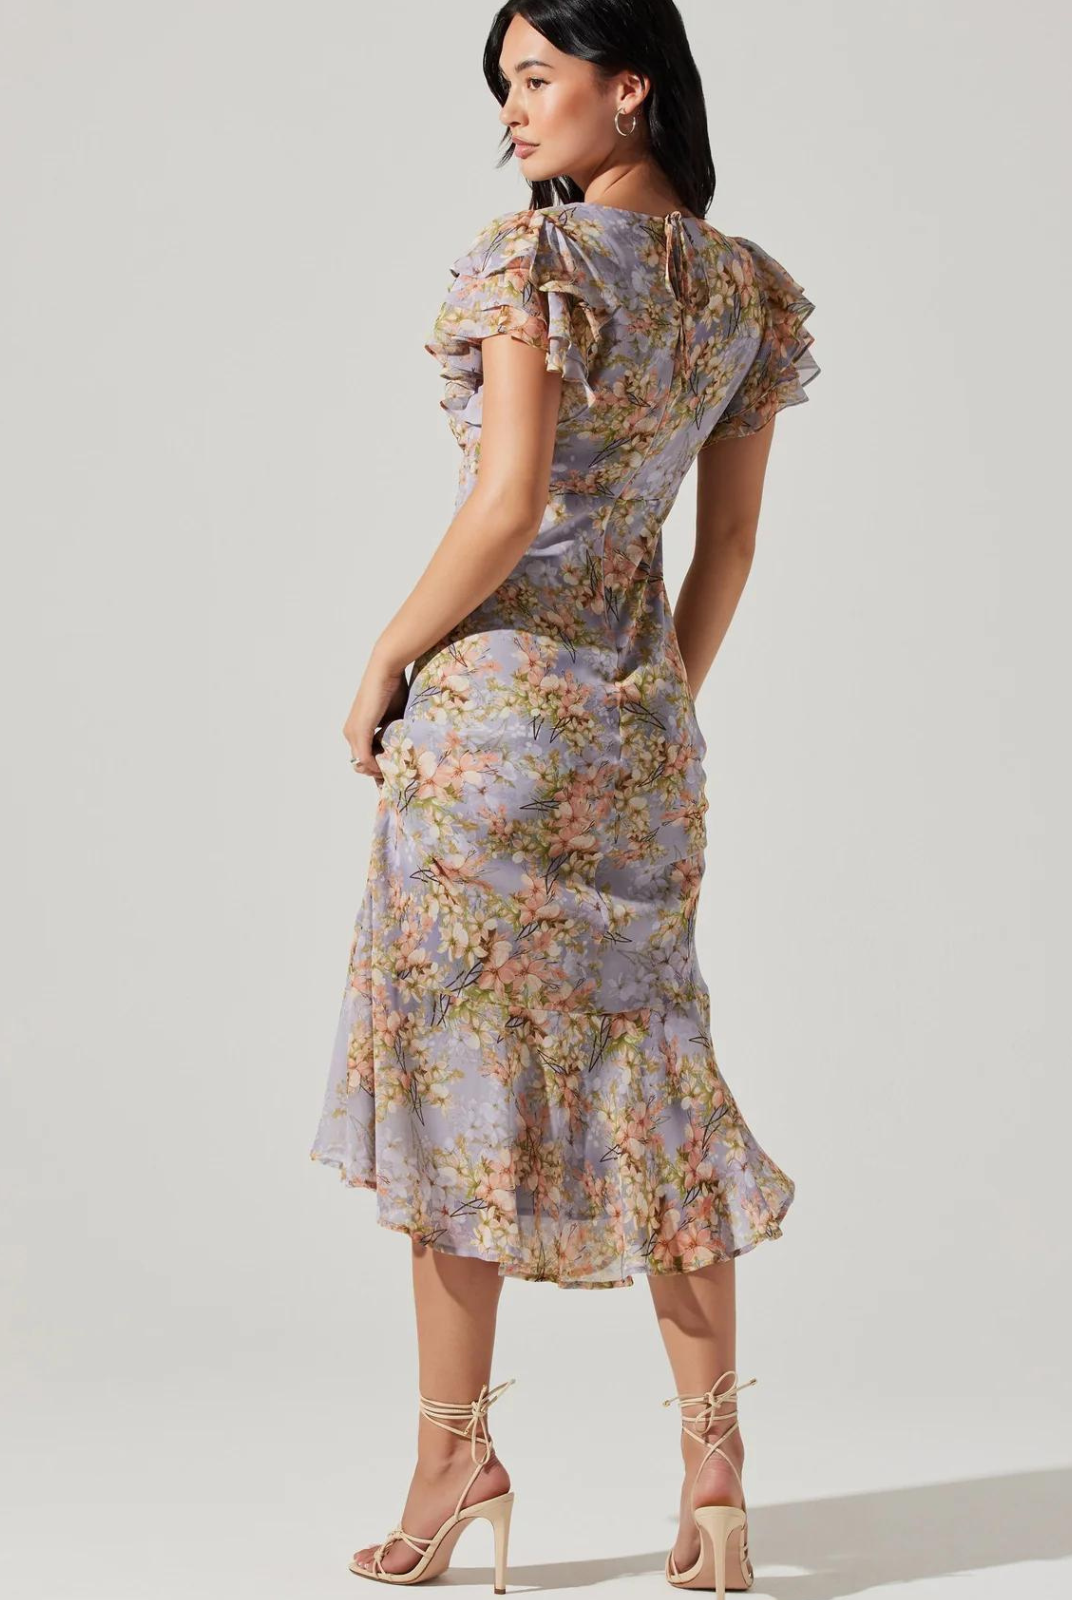 ASTR The Label Celestine Dress. V-neckline, floral print and flutter sleeves Midi length, tie neck detail, concealed back zipper